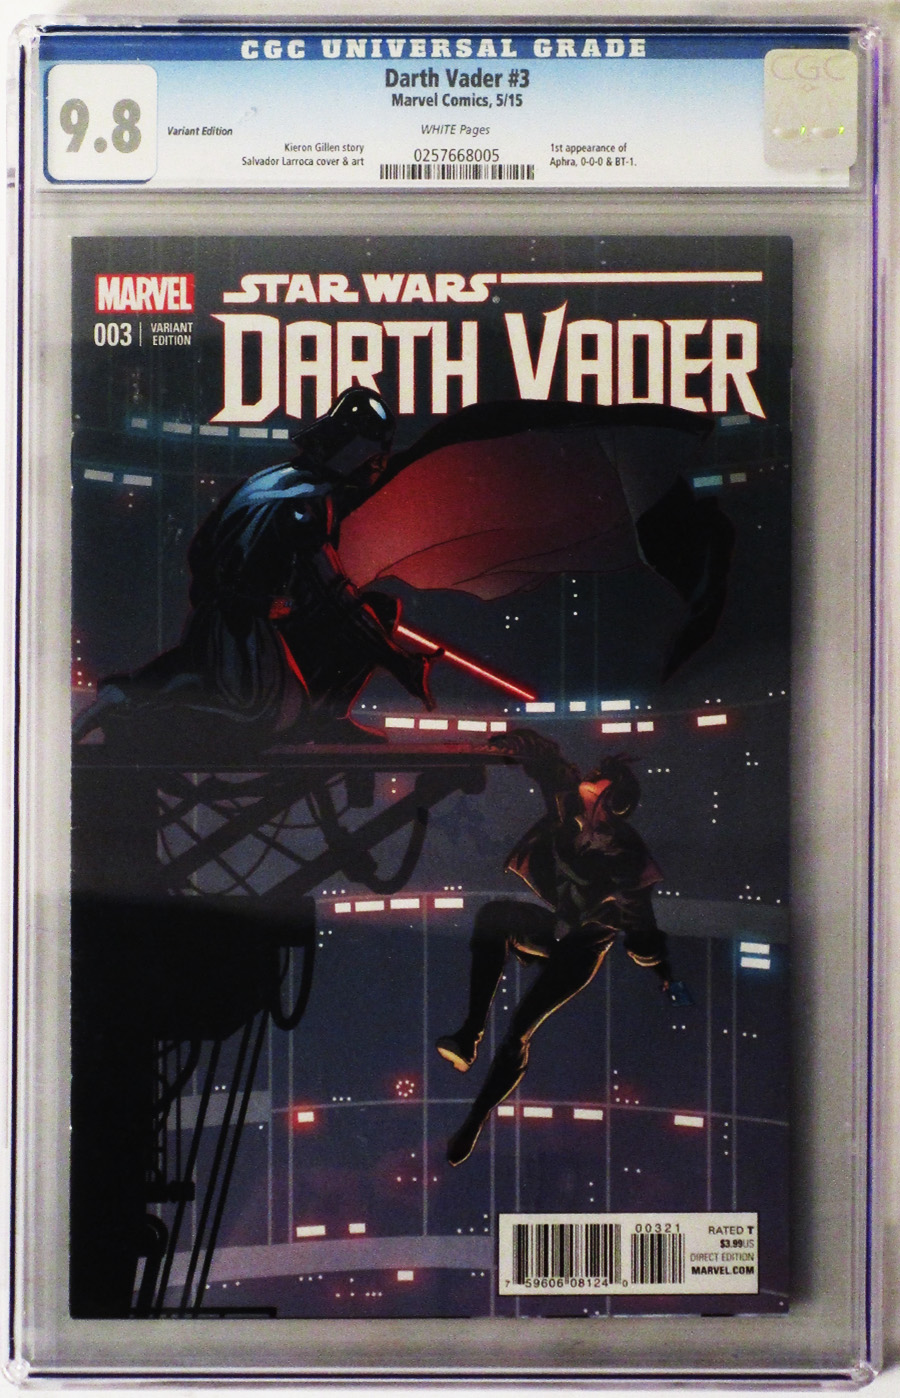 Darth Vader #3 Cover F CGC 9.8 Incentive Salvador Larroca Variant Cover